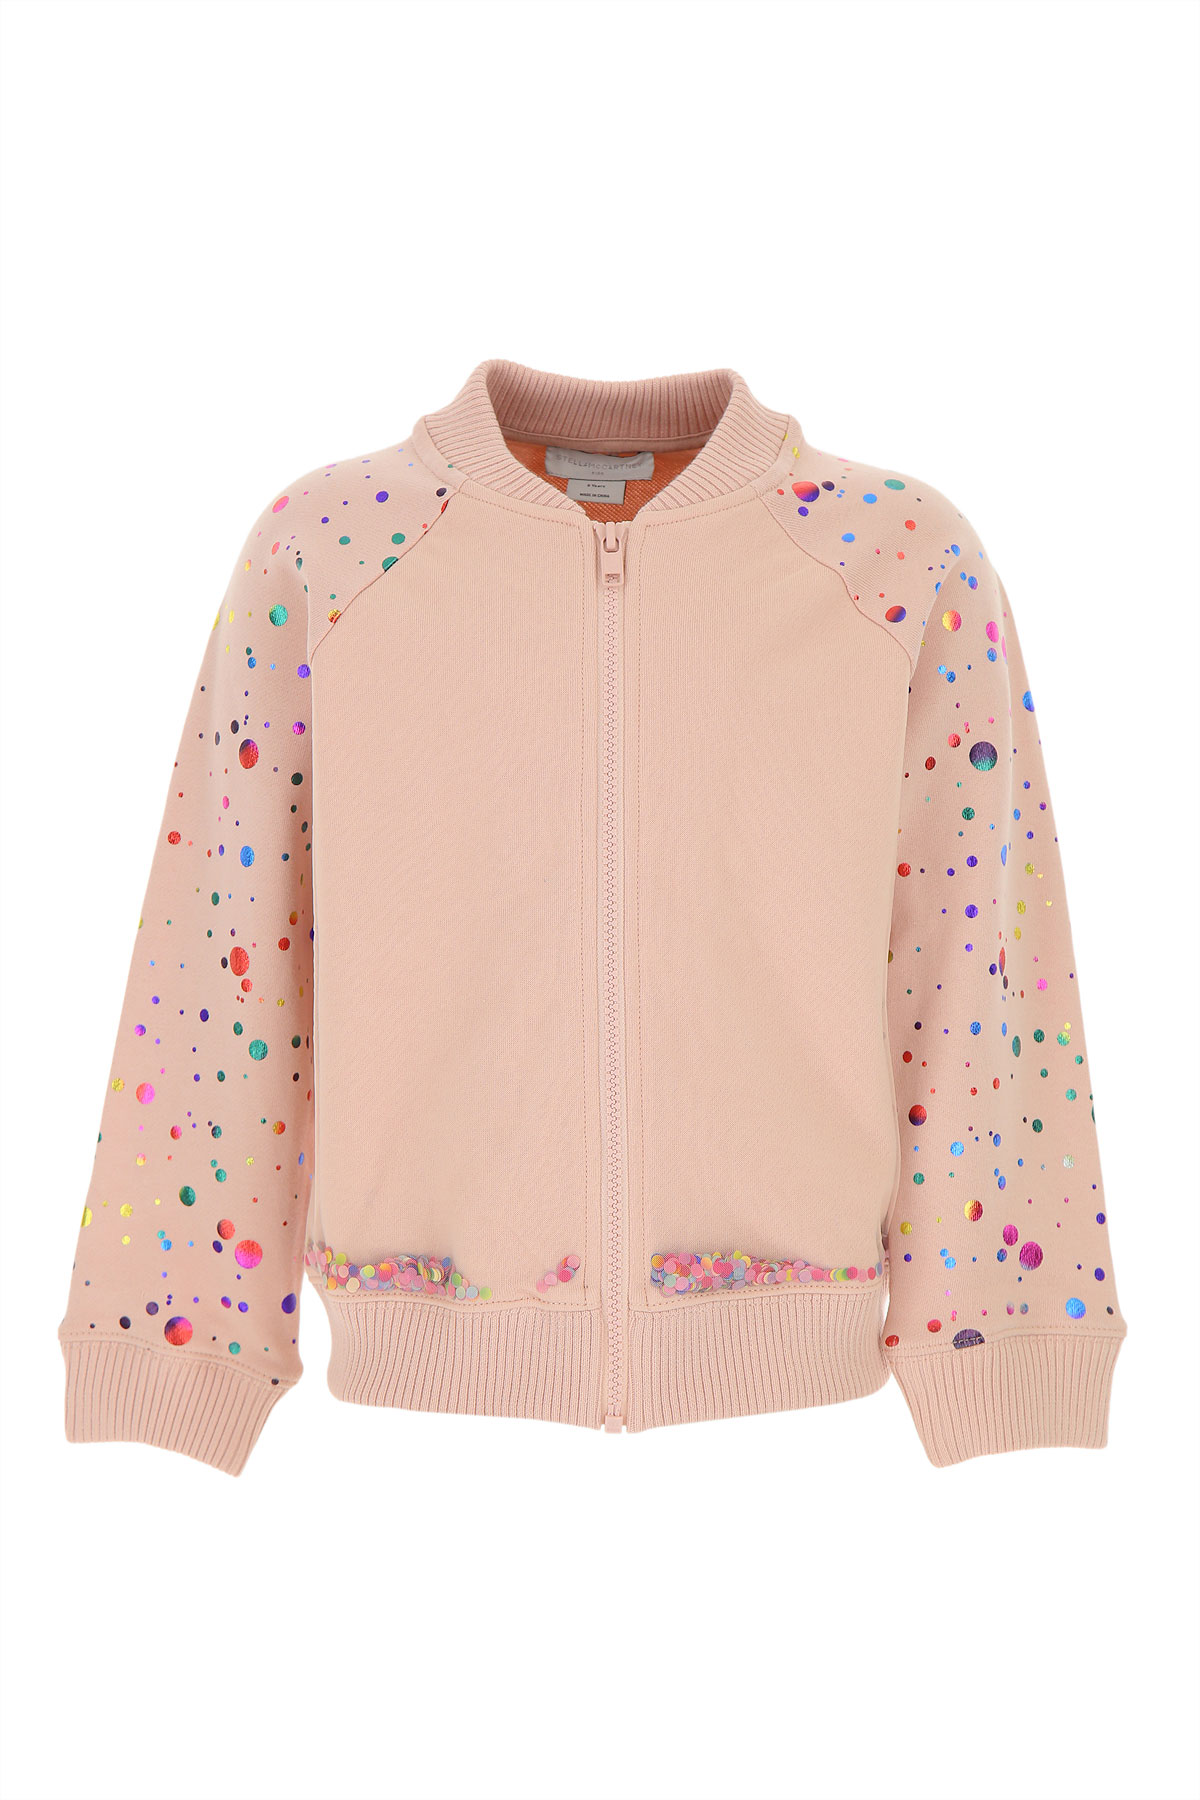 Stella McCartney Kinder Sweatshirt & Kapuzenpullover für Mädchen Günstig im Sale, Pfingstrosen Pink, Baumwolle, 2017, 12Y 14Y 4Y